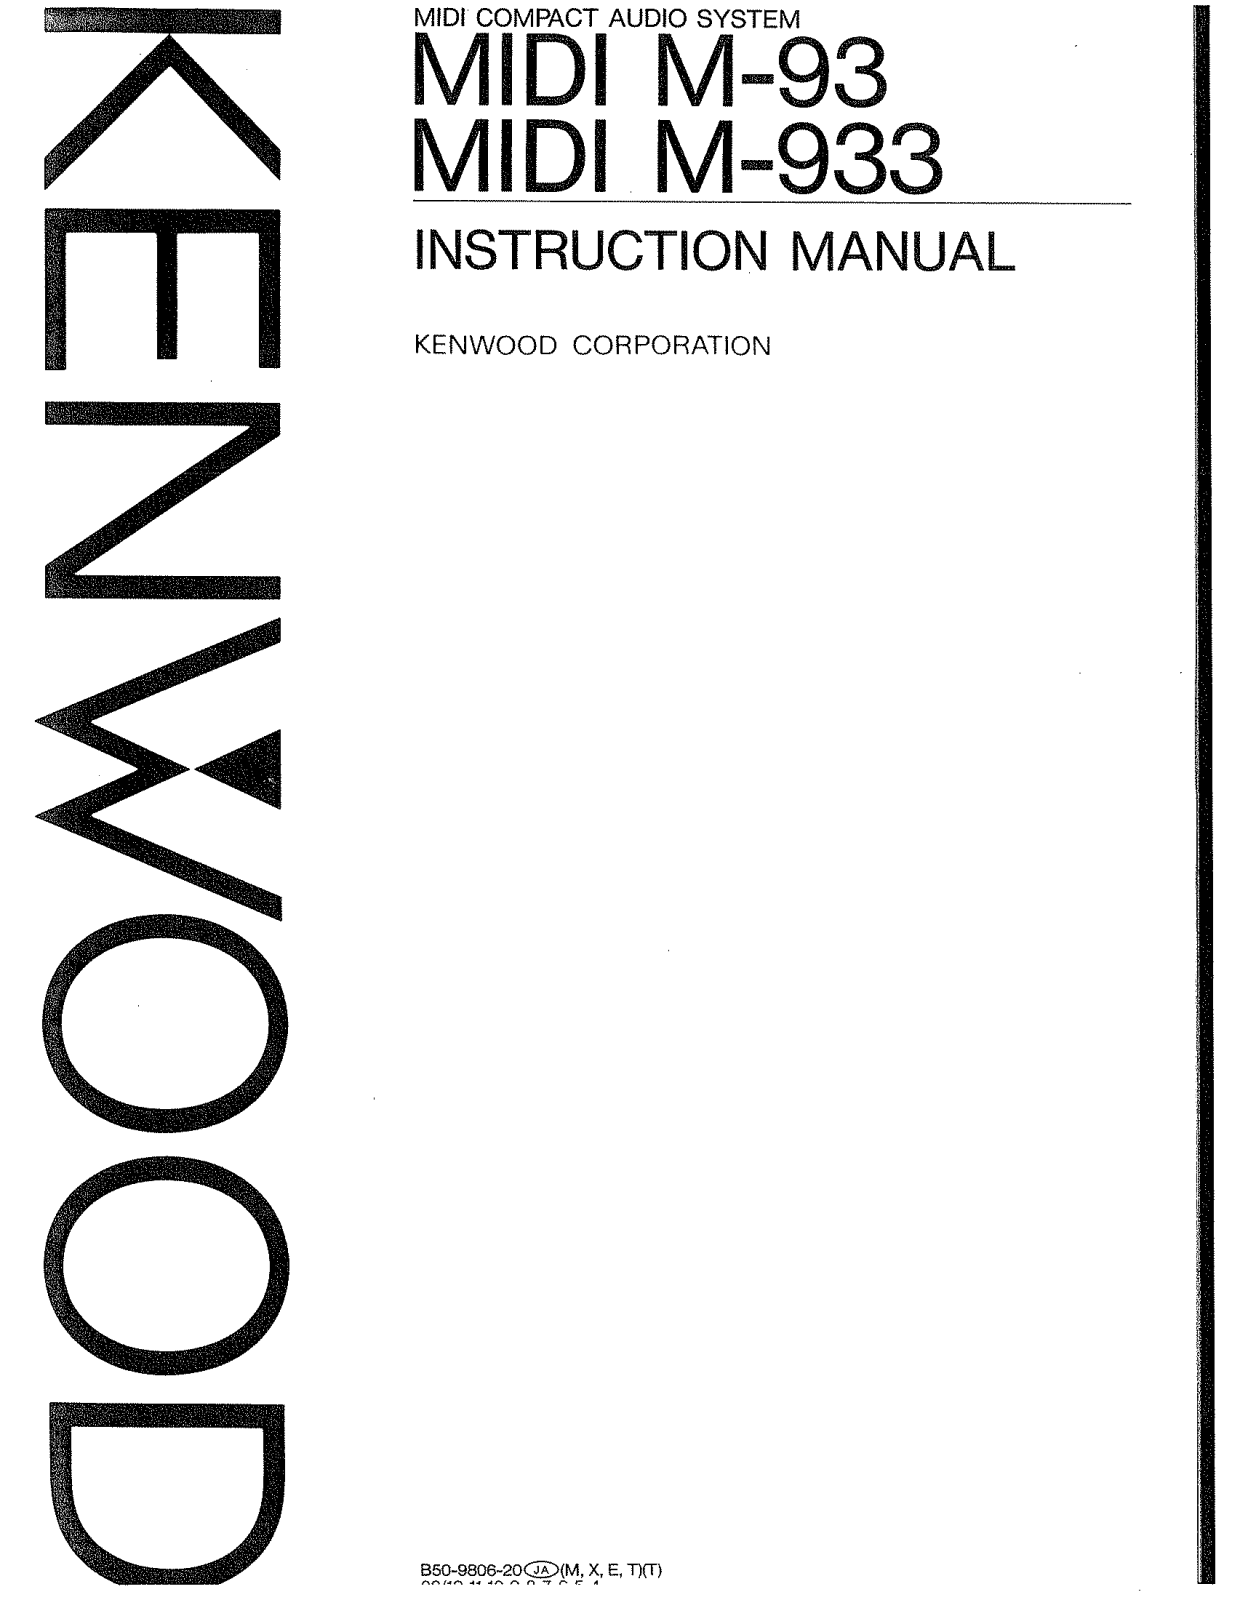 Kenwood X-93, T-93L, T-93, MIDI M-933, MIDI M-93 Owner's Manual